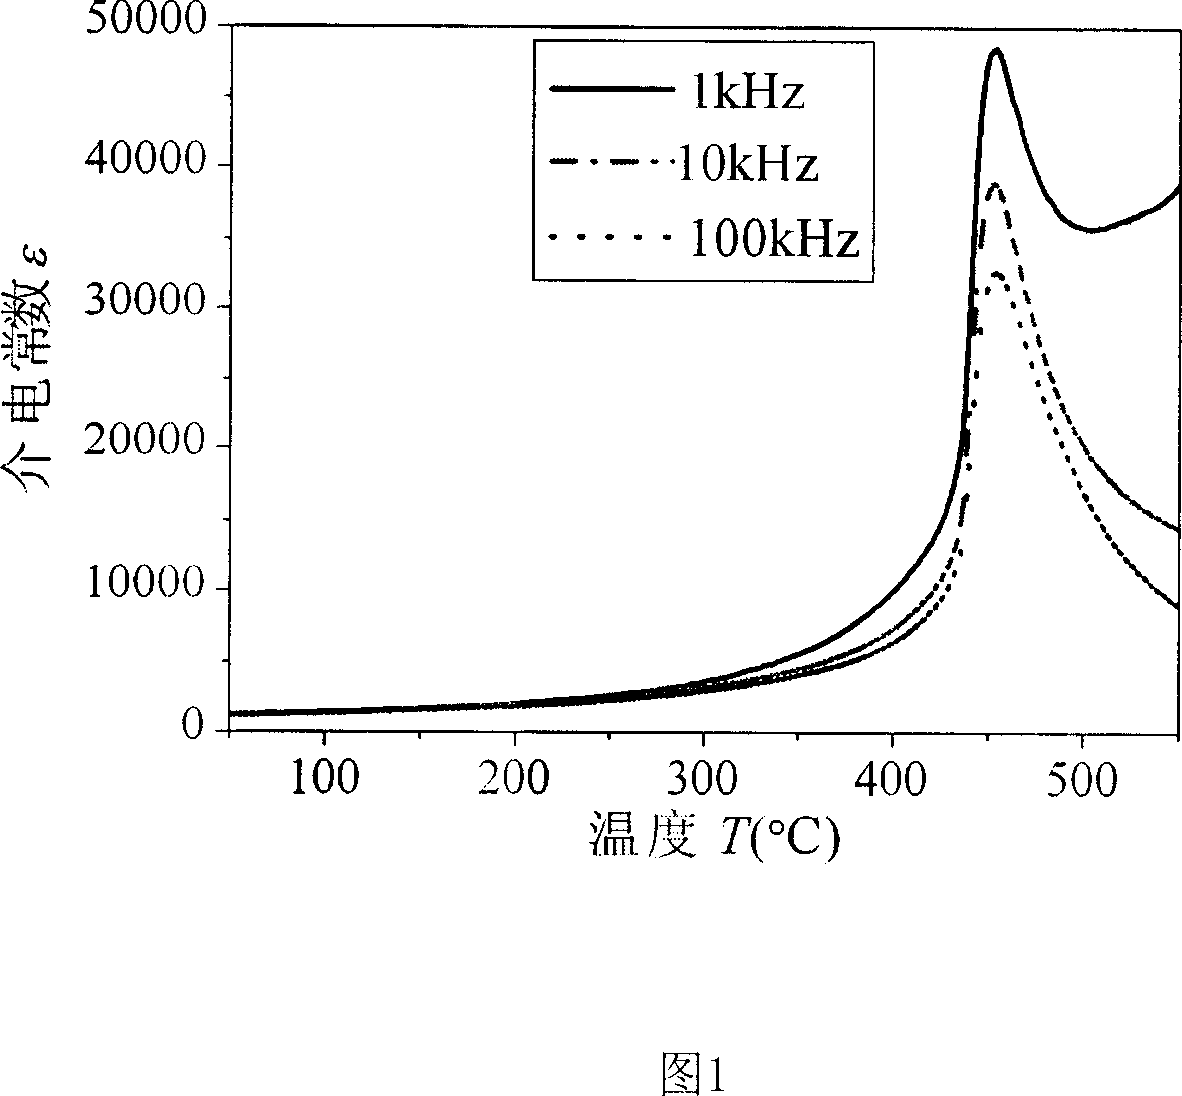 Lead-bismuth-lithium-titanium-scandium-niobium series piezoelectric ceramic with high Curie temperature and high piezoelectricity property